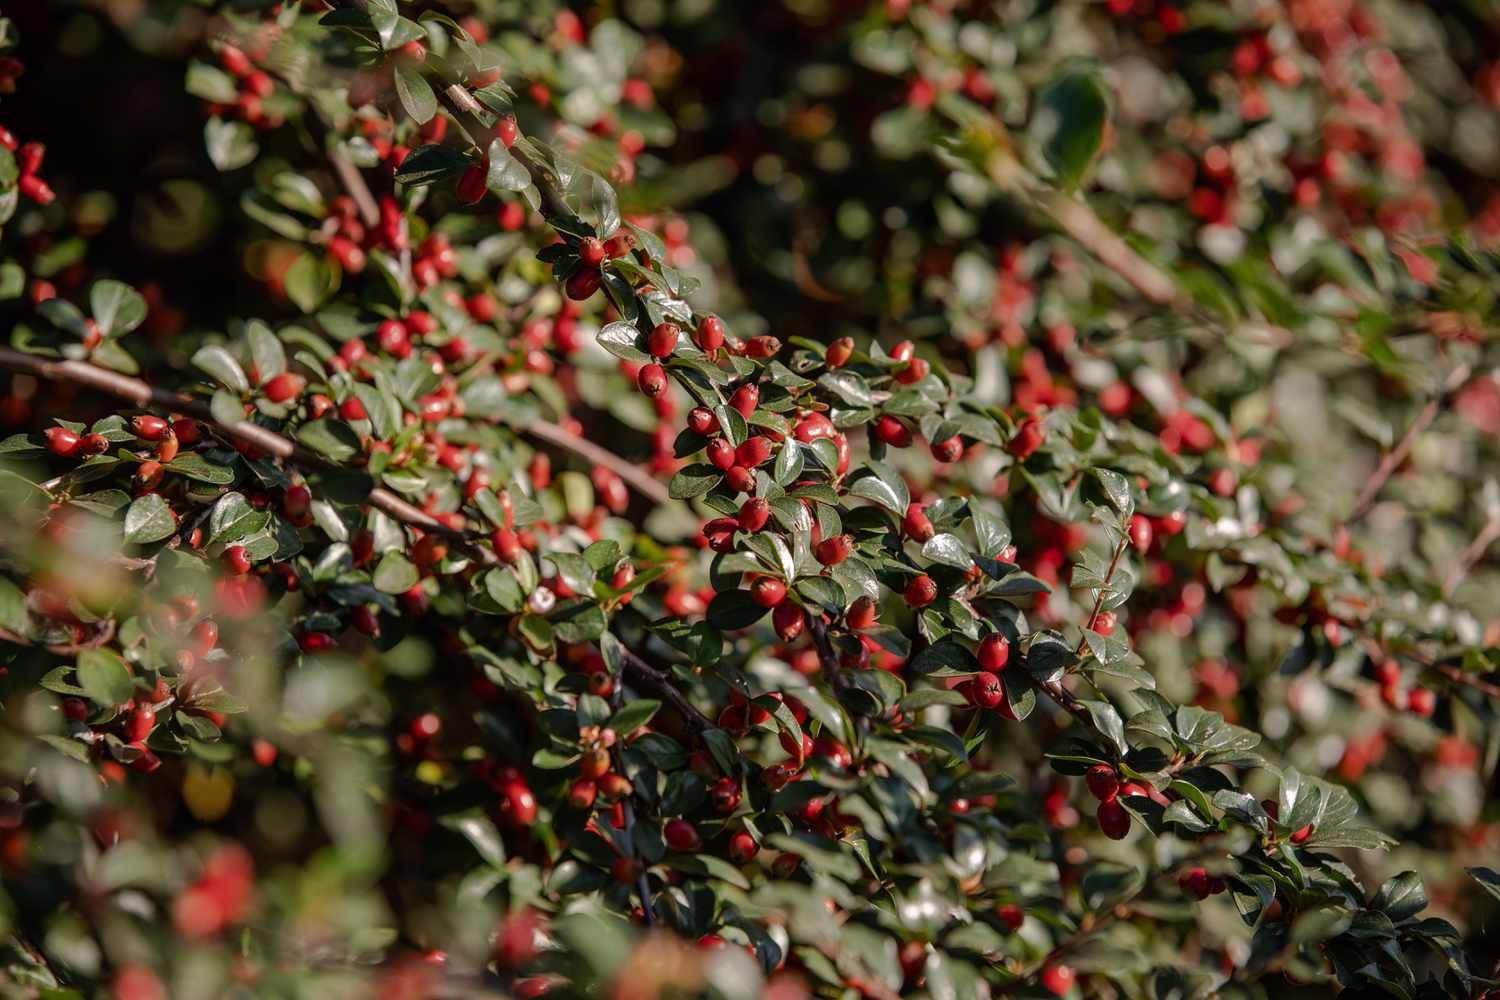 Cotoneaster-Stämme mit kleinen runden Blättern und leuchtend roten Beeren